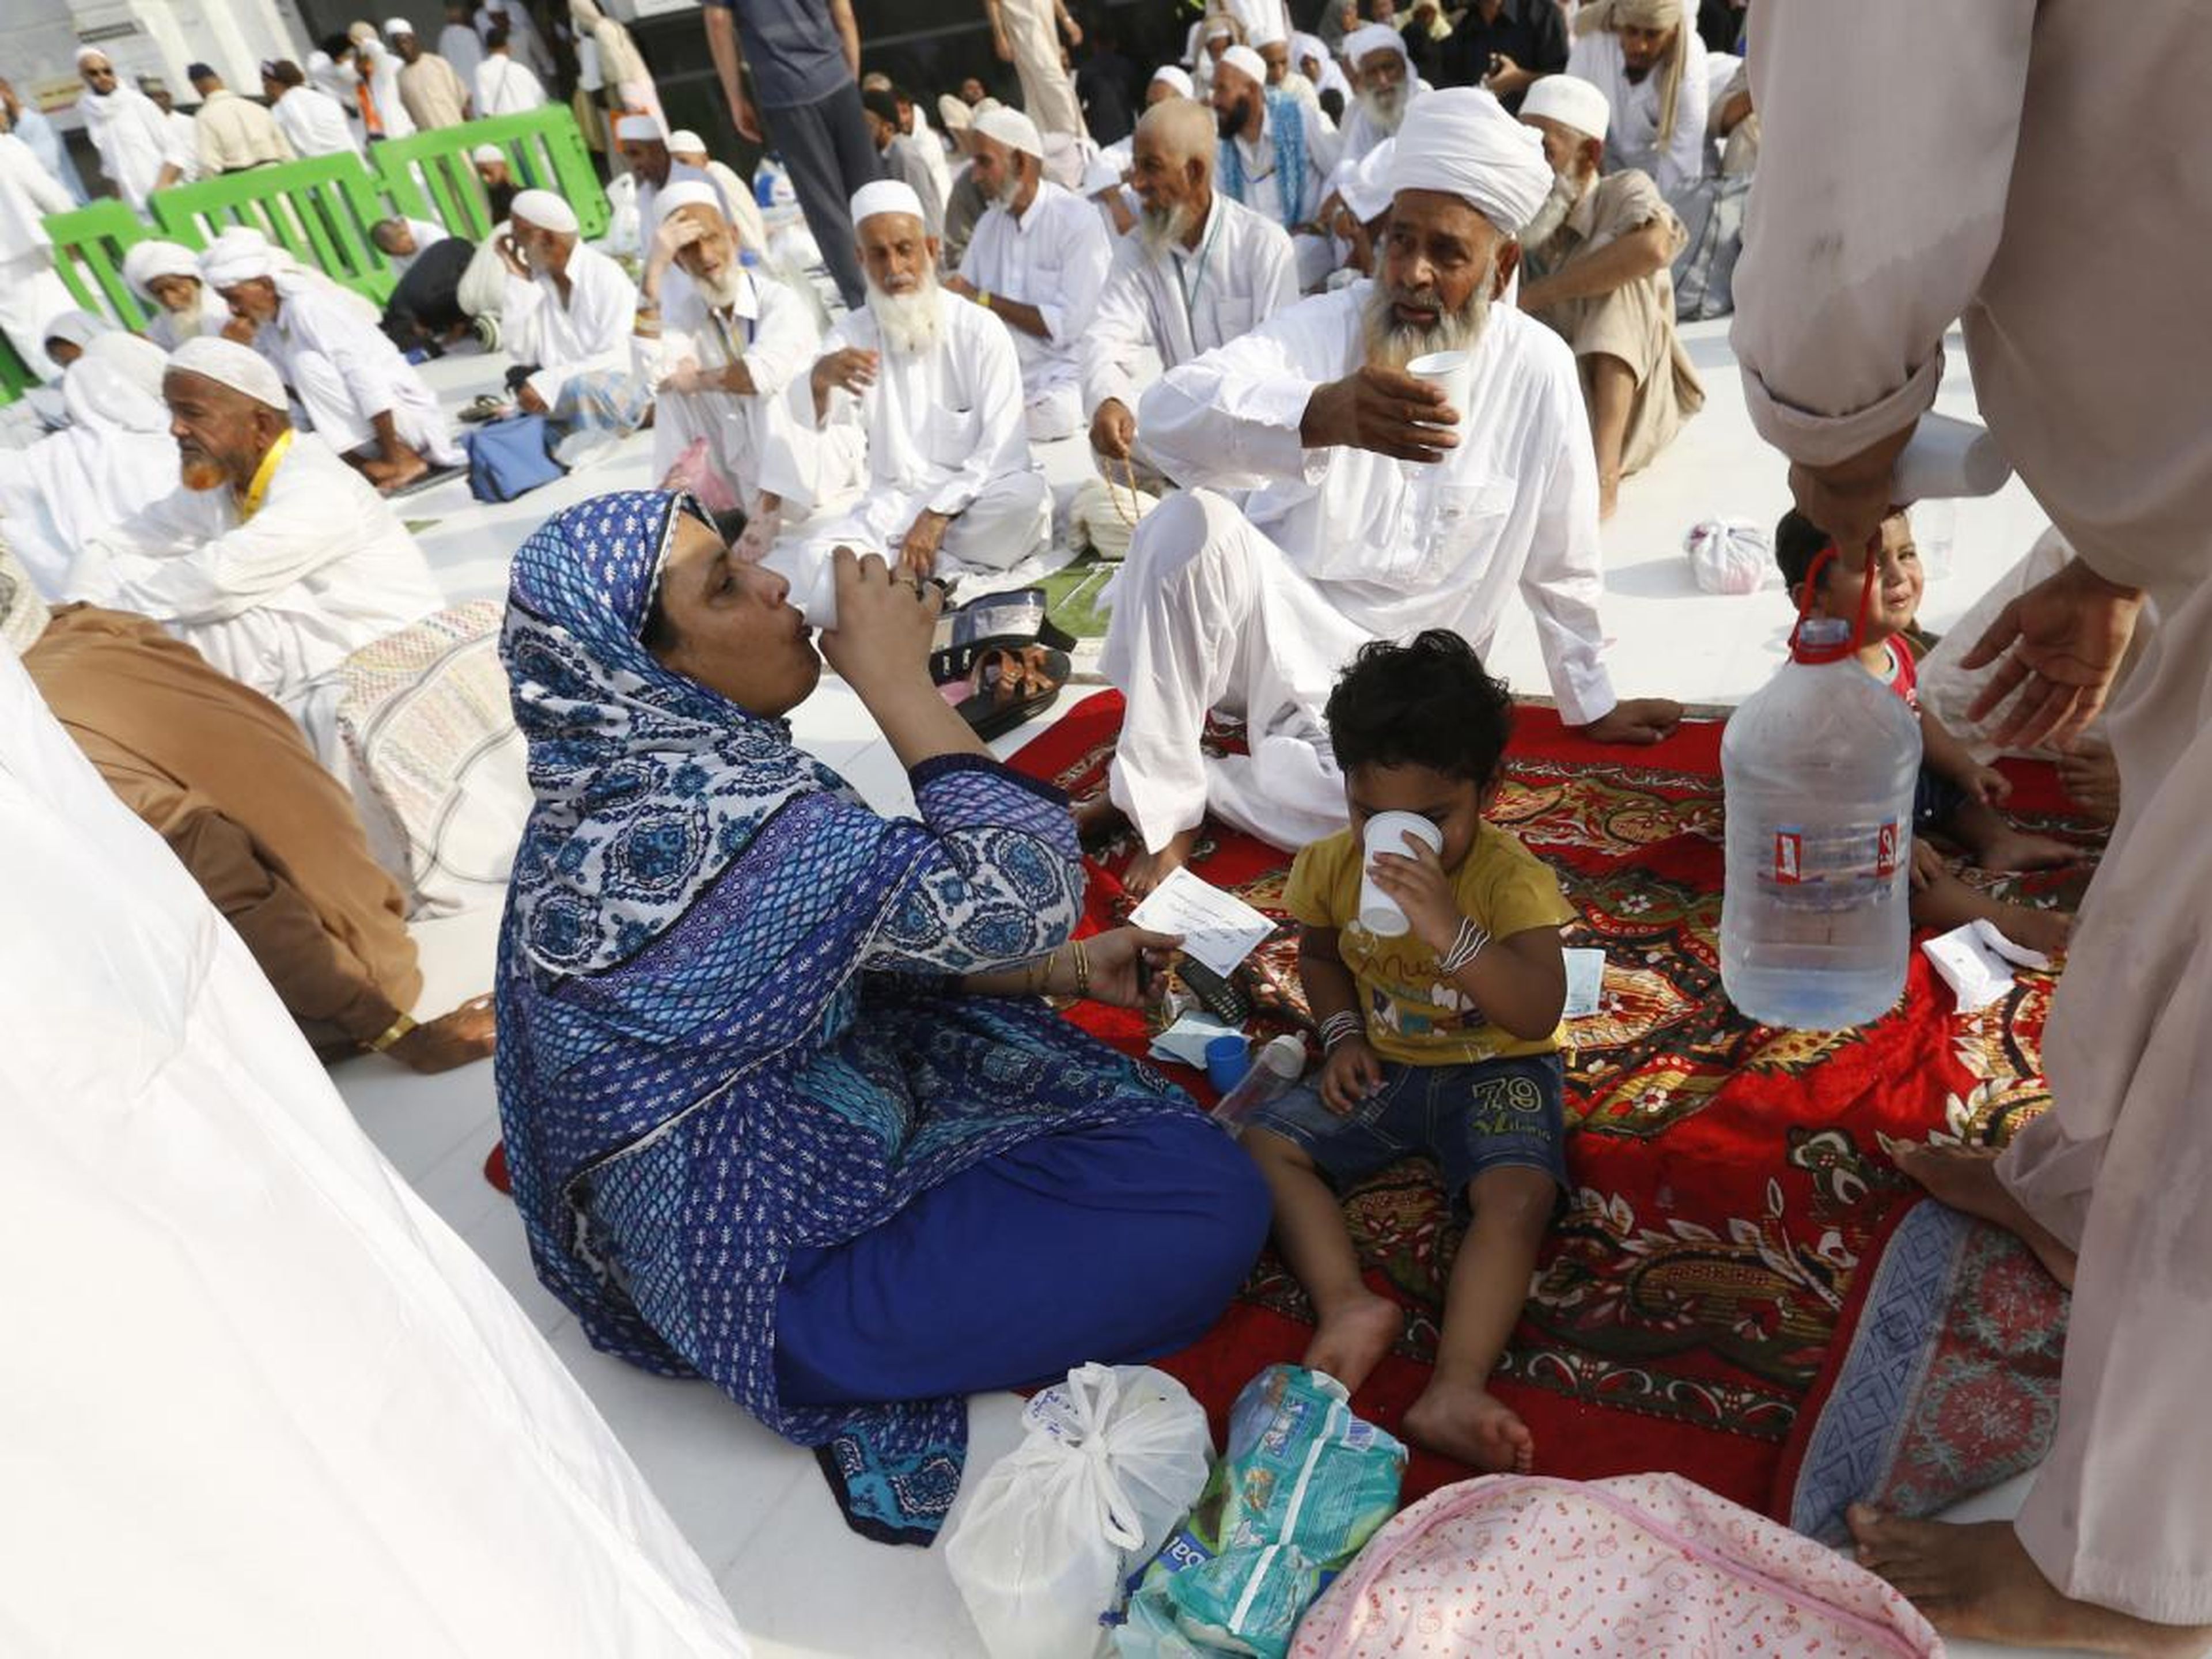 Gente sentada en la acera alrededor de la Gran Mezquita.